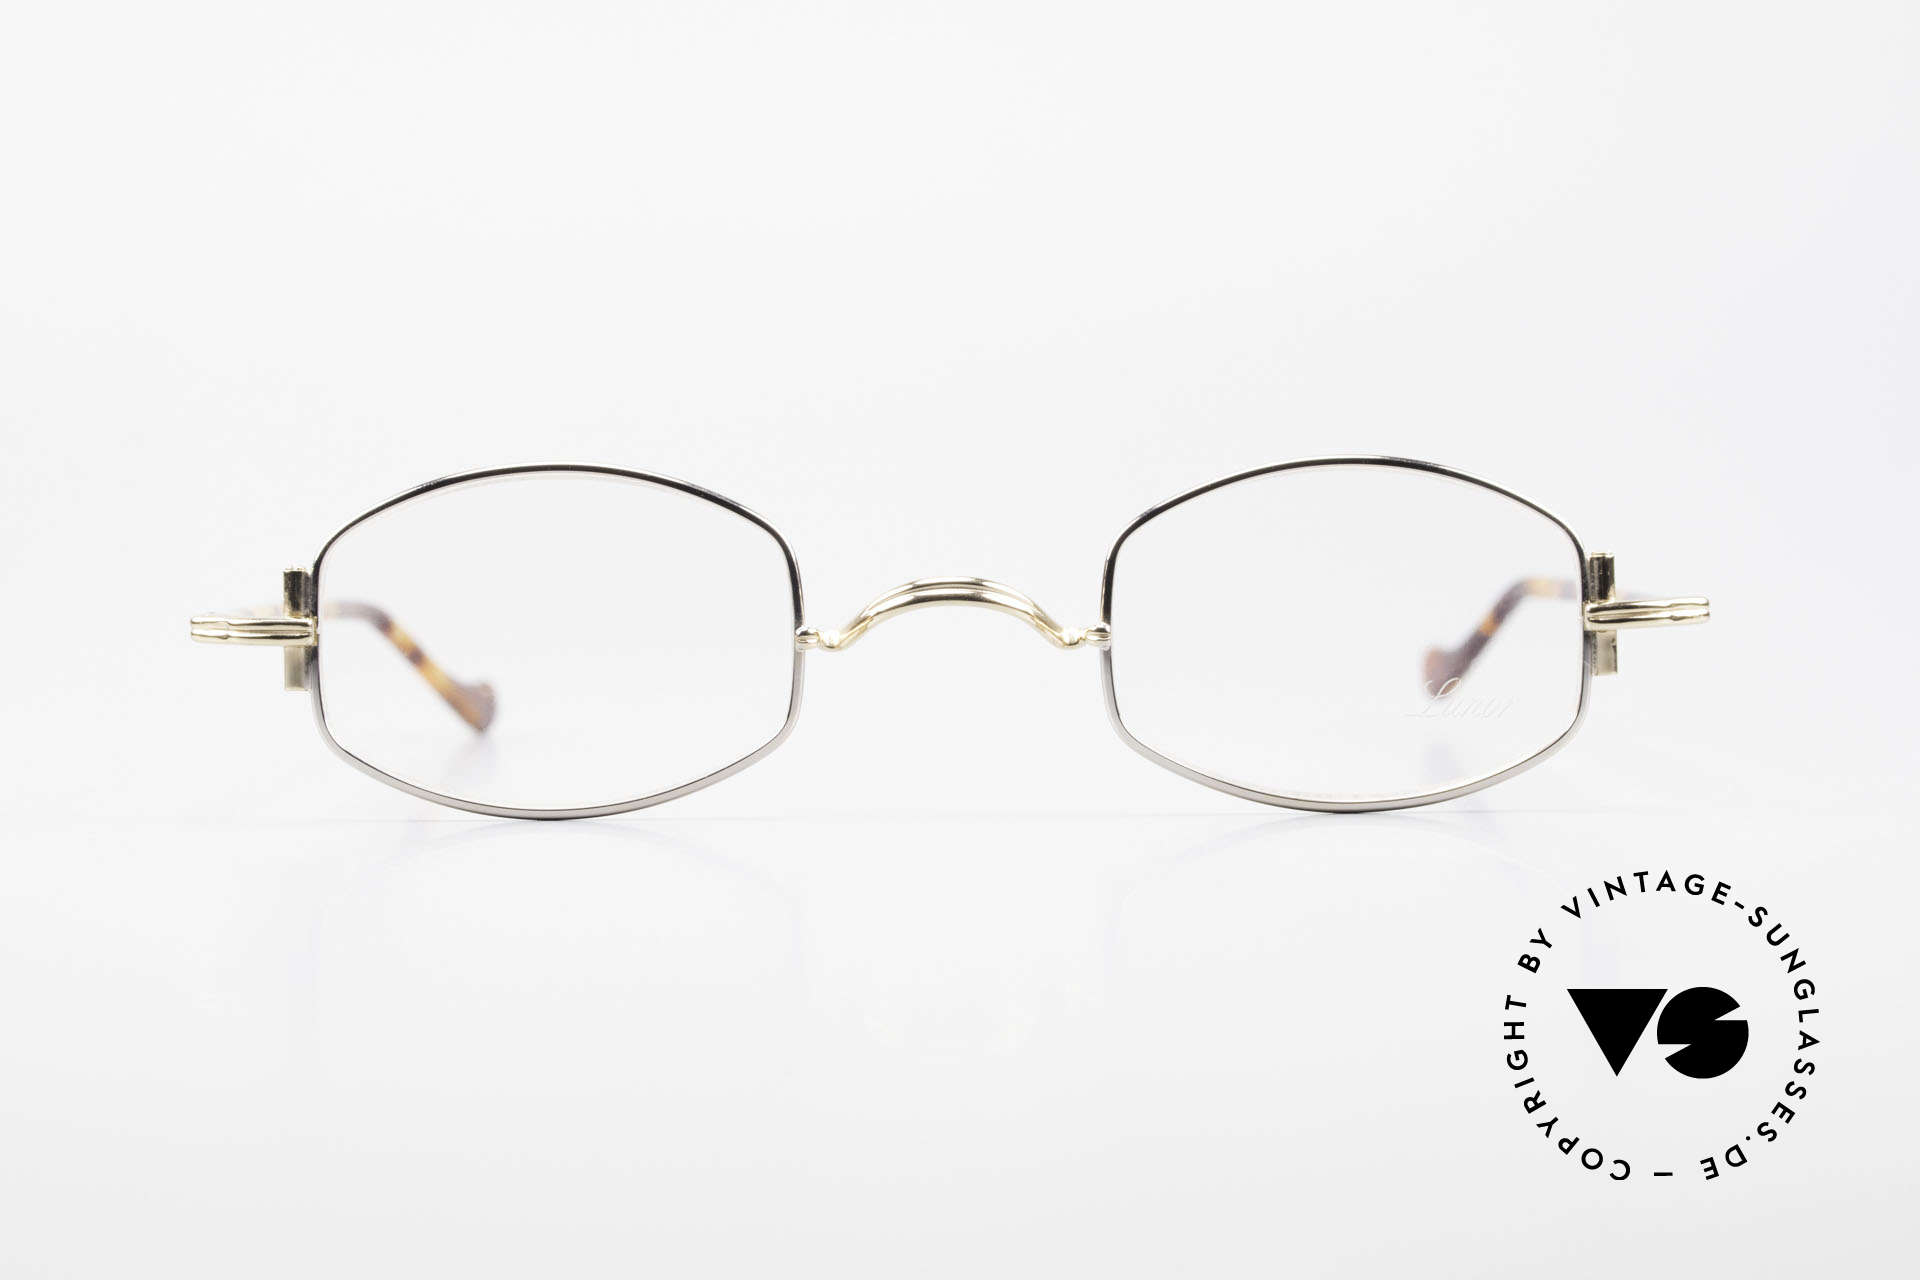 Lunor XA 03 Lunor Brille No Retro Vintage, LUNOR ist ein deutsches Traditionsunternehmen ..., Passend für Herren und Damen